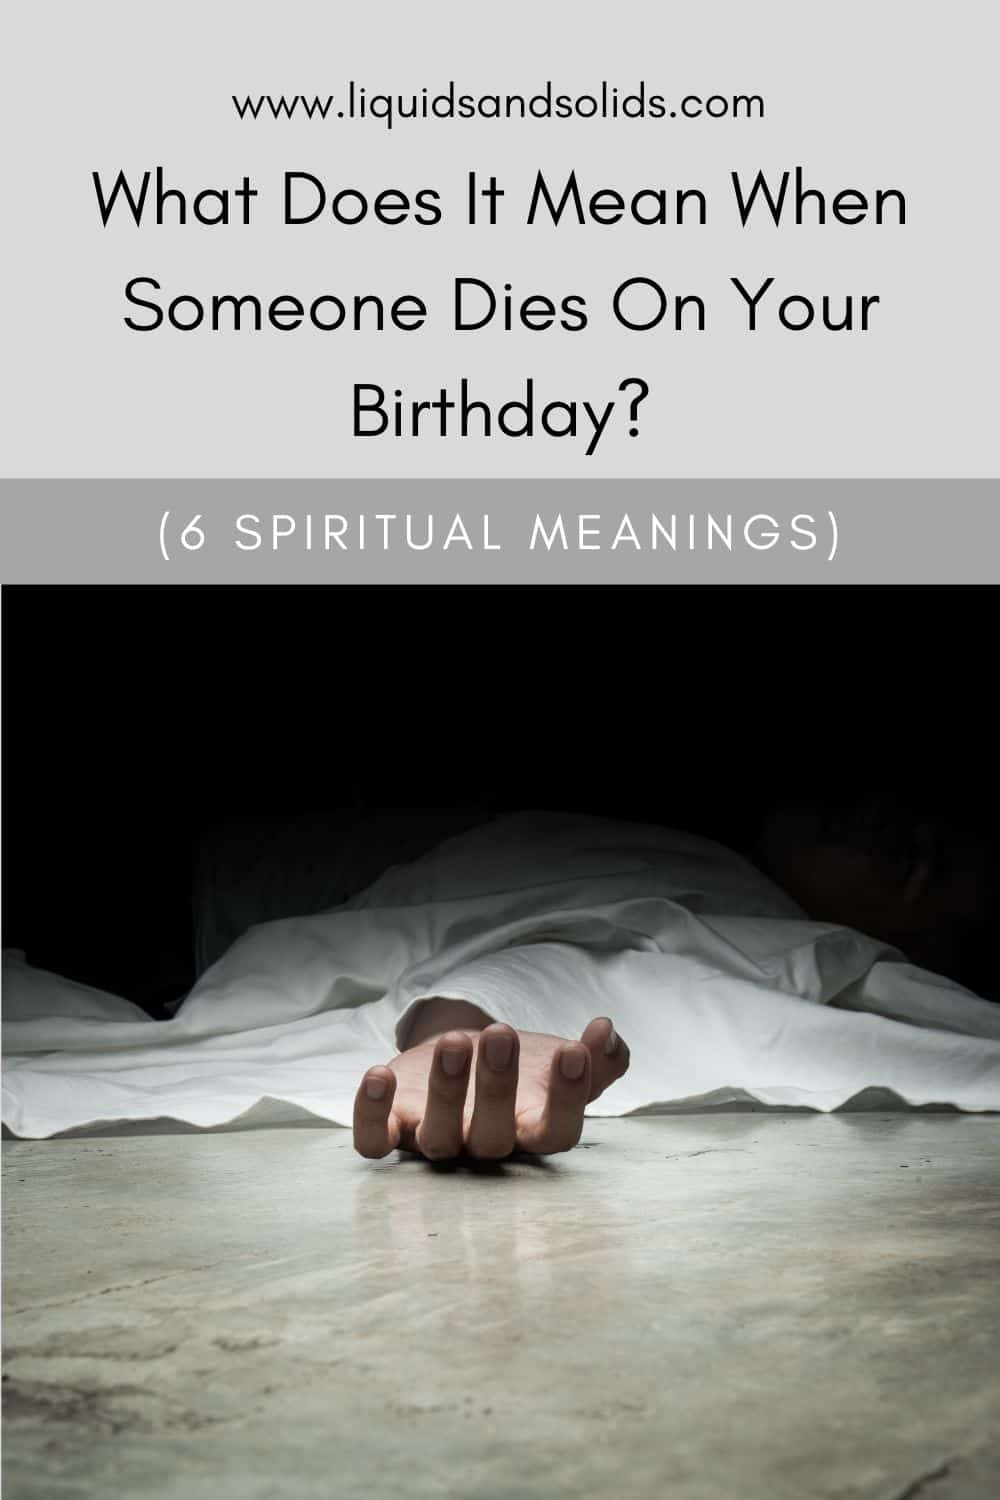  რას ნიშნავს, როცა ვინმე შენს დაბადების დღეს კვდება? (6 სულიერი მნიშვნელობა)